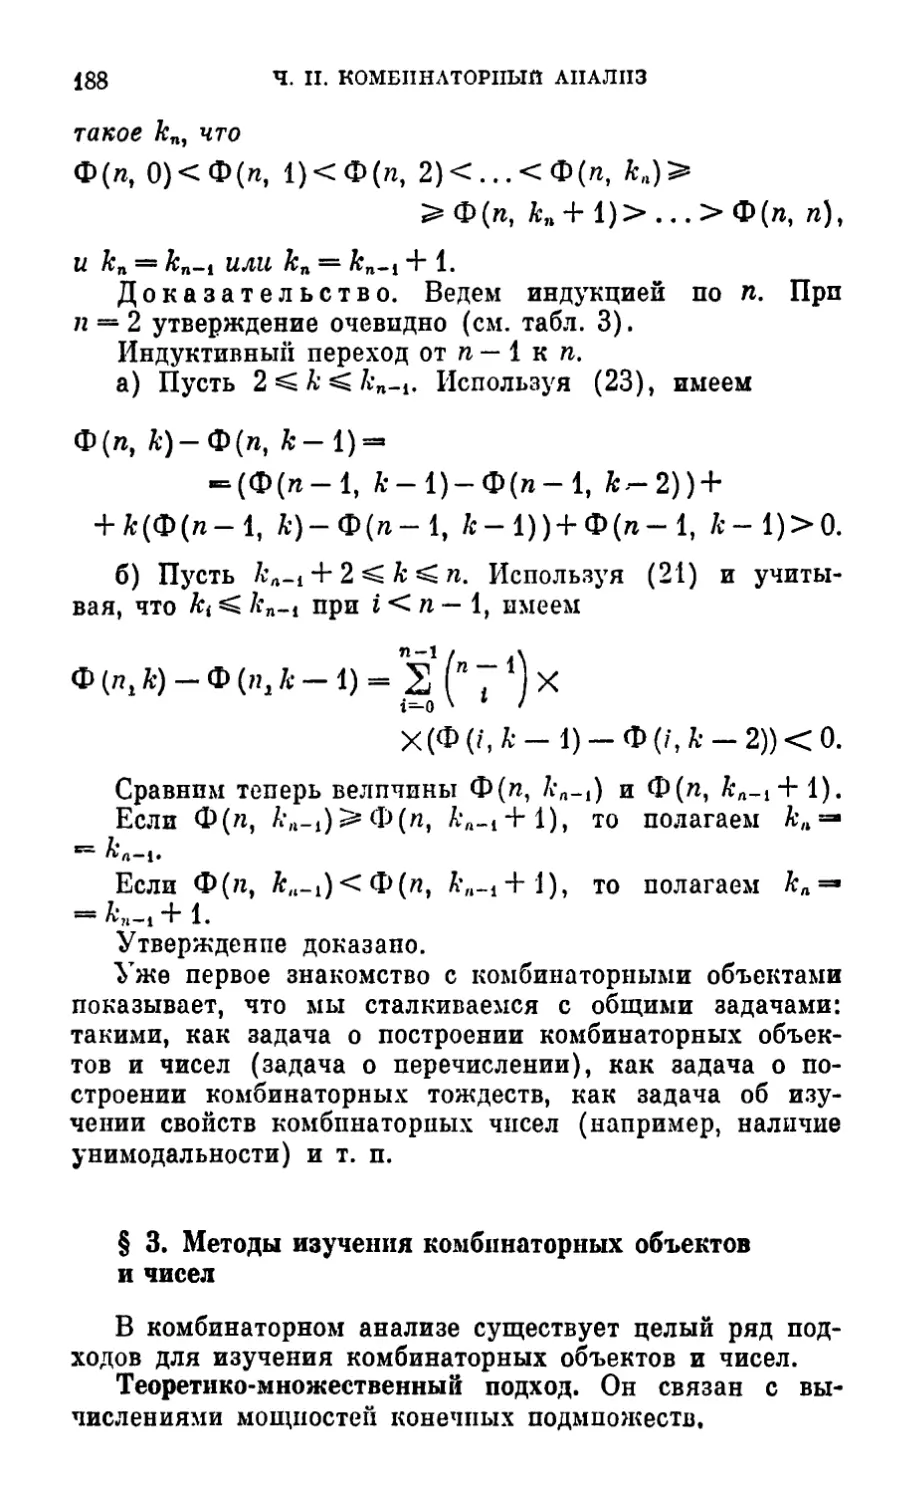 § 3. Методы изучения комбинаторных объектов и чисел